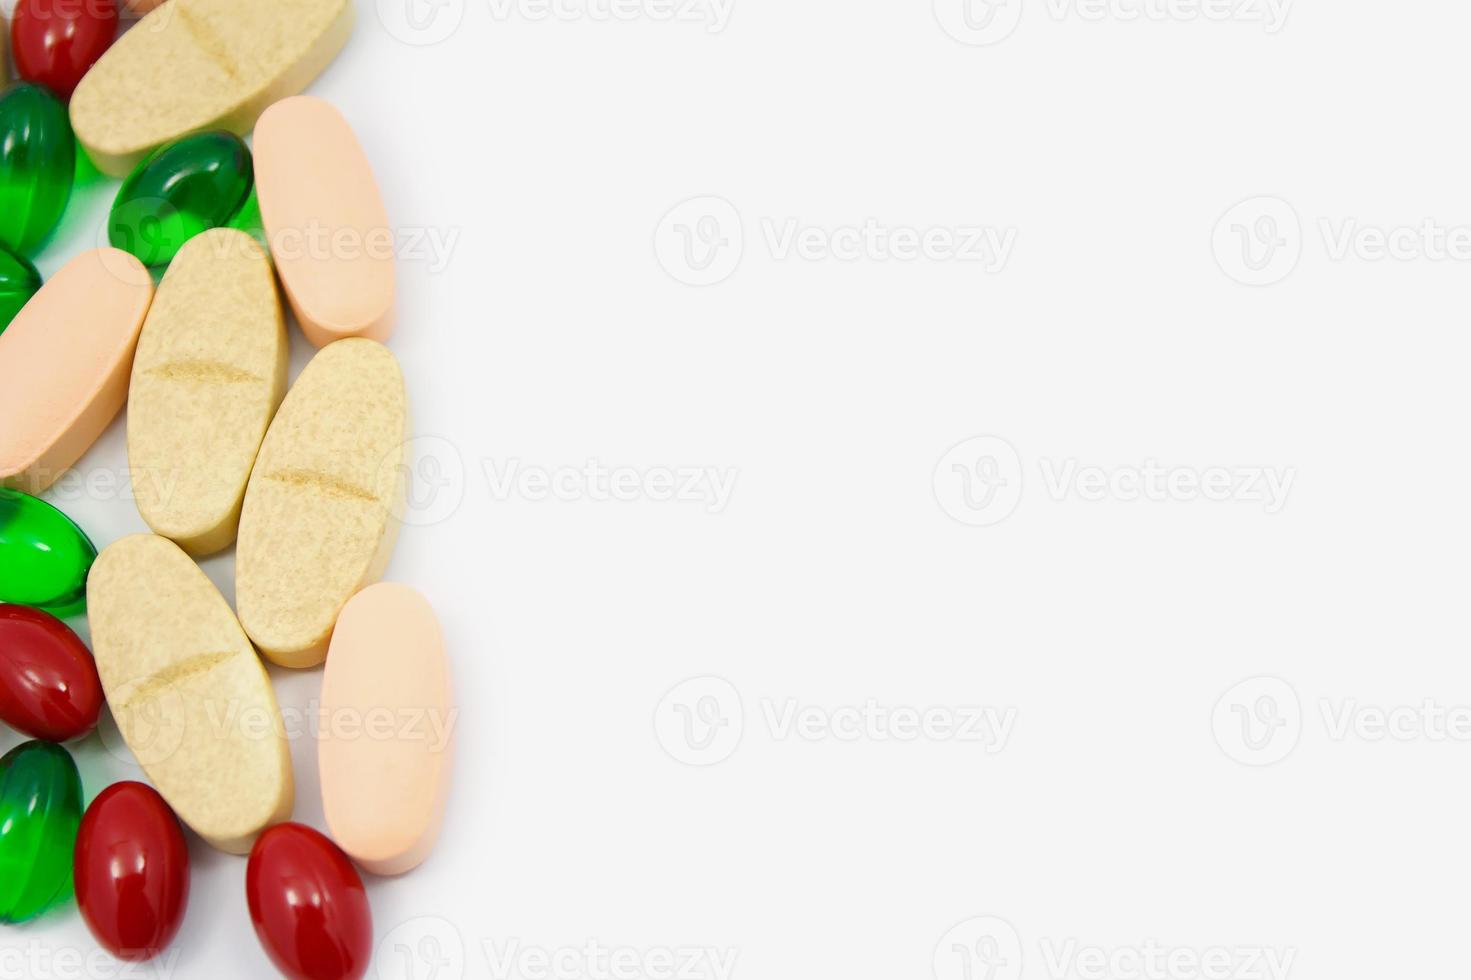 färgade piller, tabletter och kapslar på en vit bakgrund foto